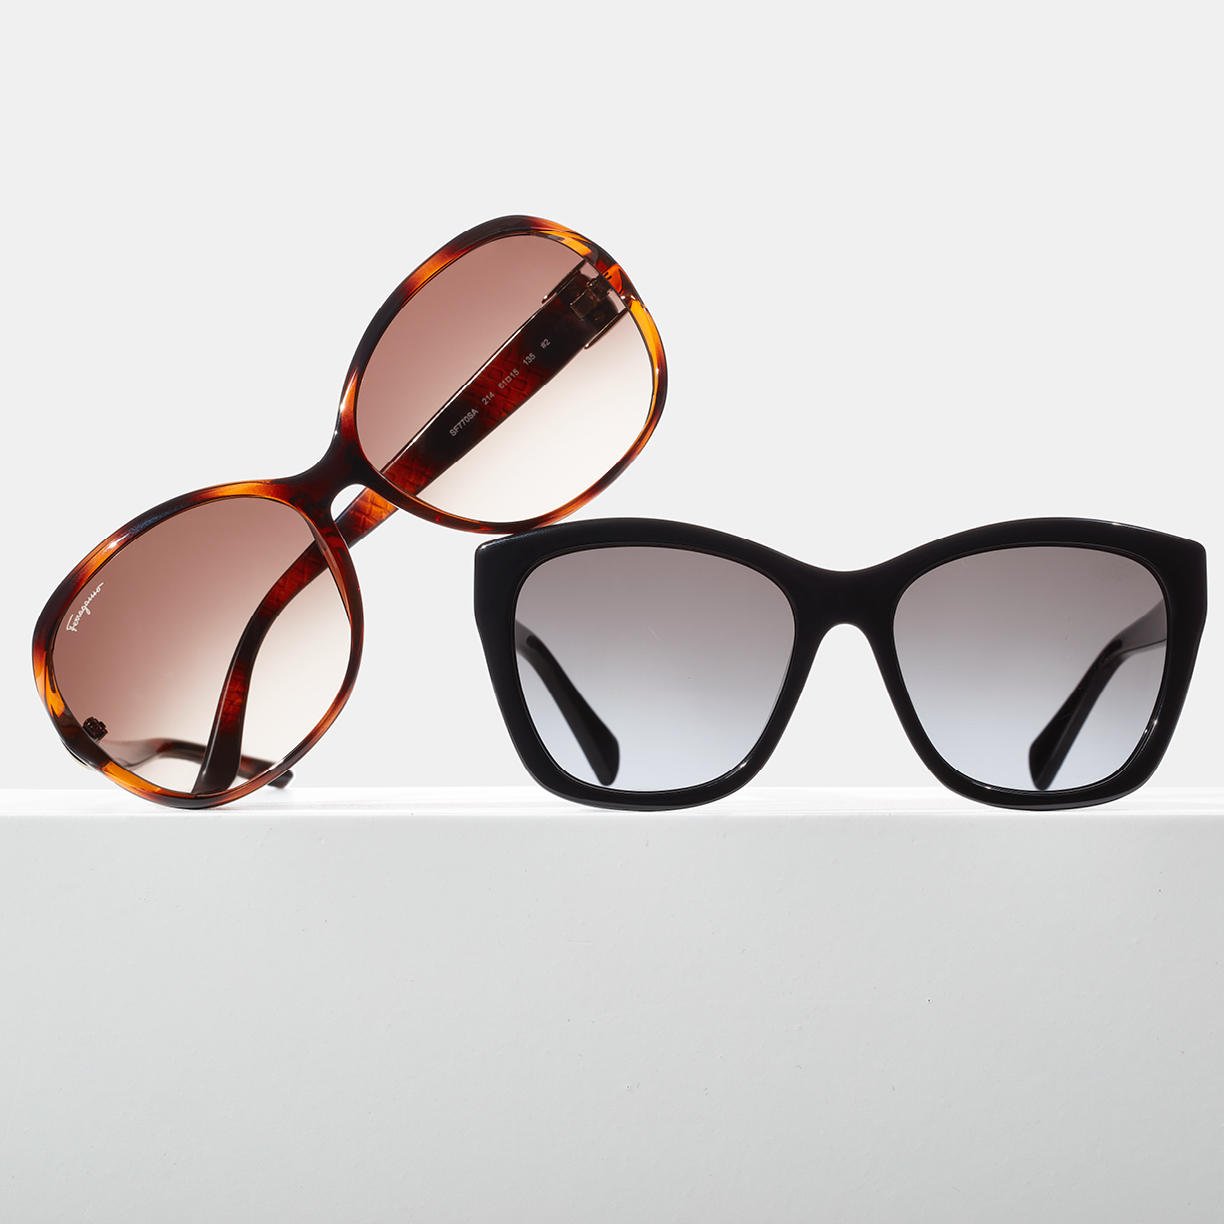 Designer Sunglasses Up to 70% Off Feat. FERRAGAMO